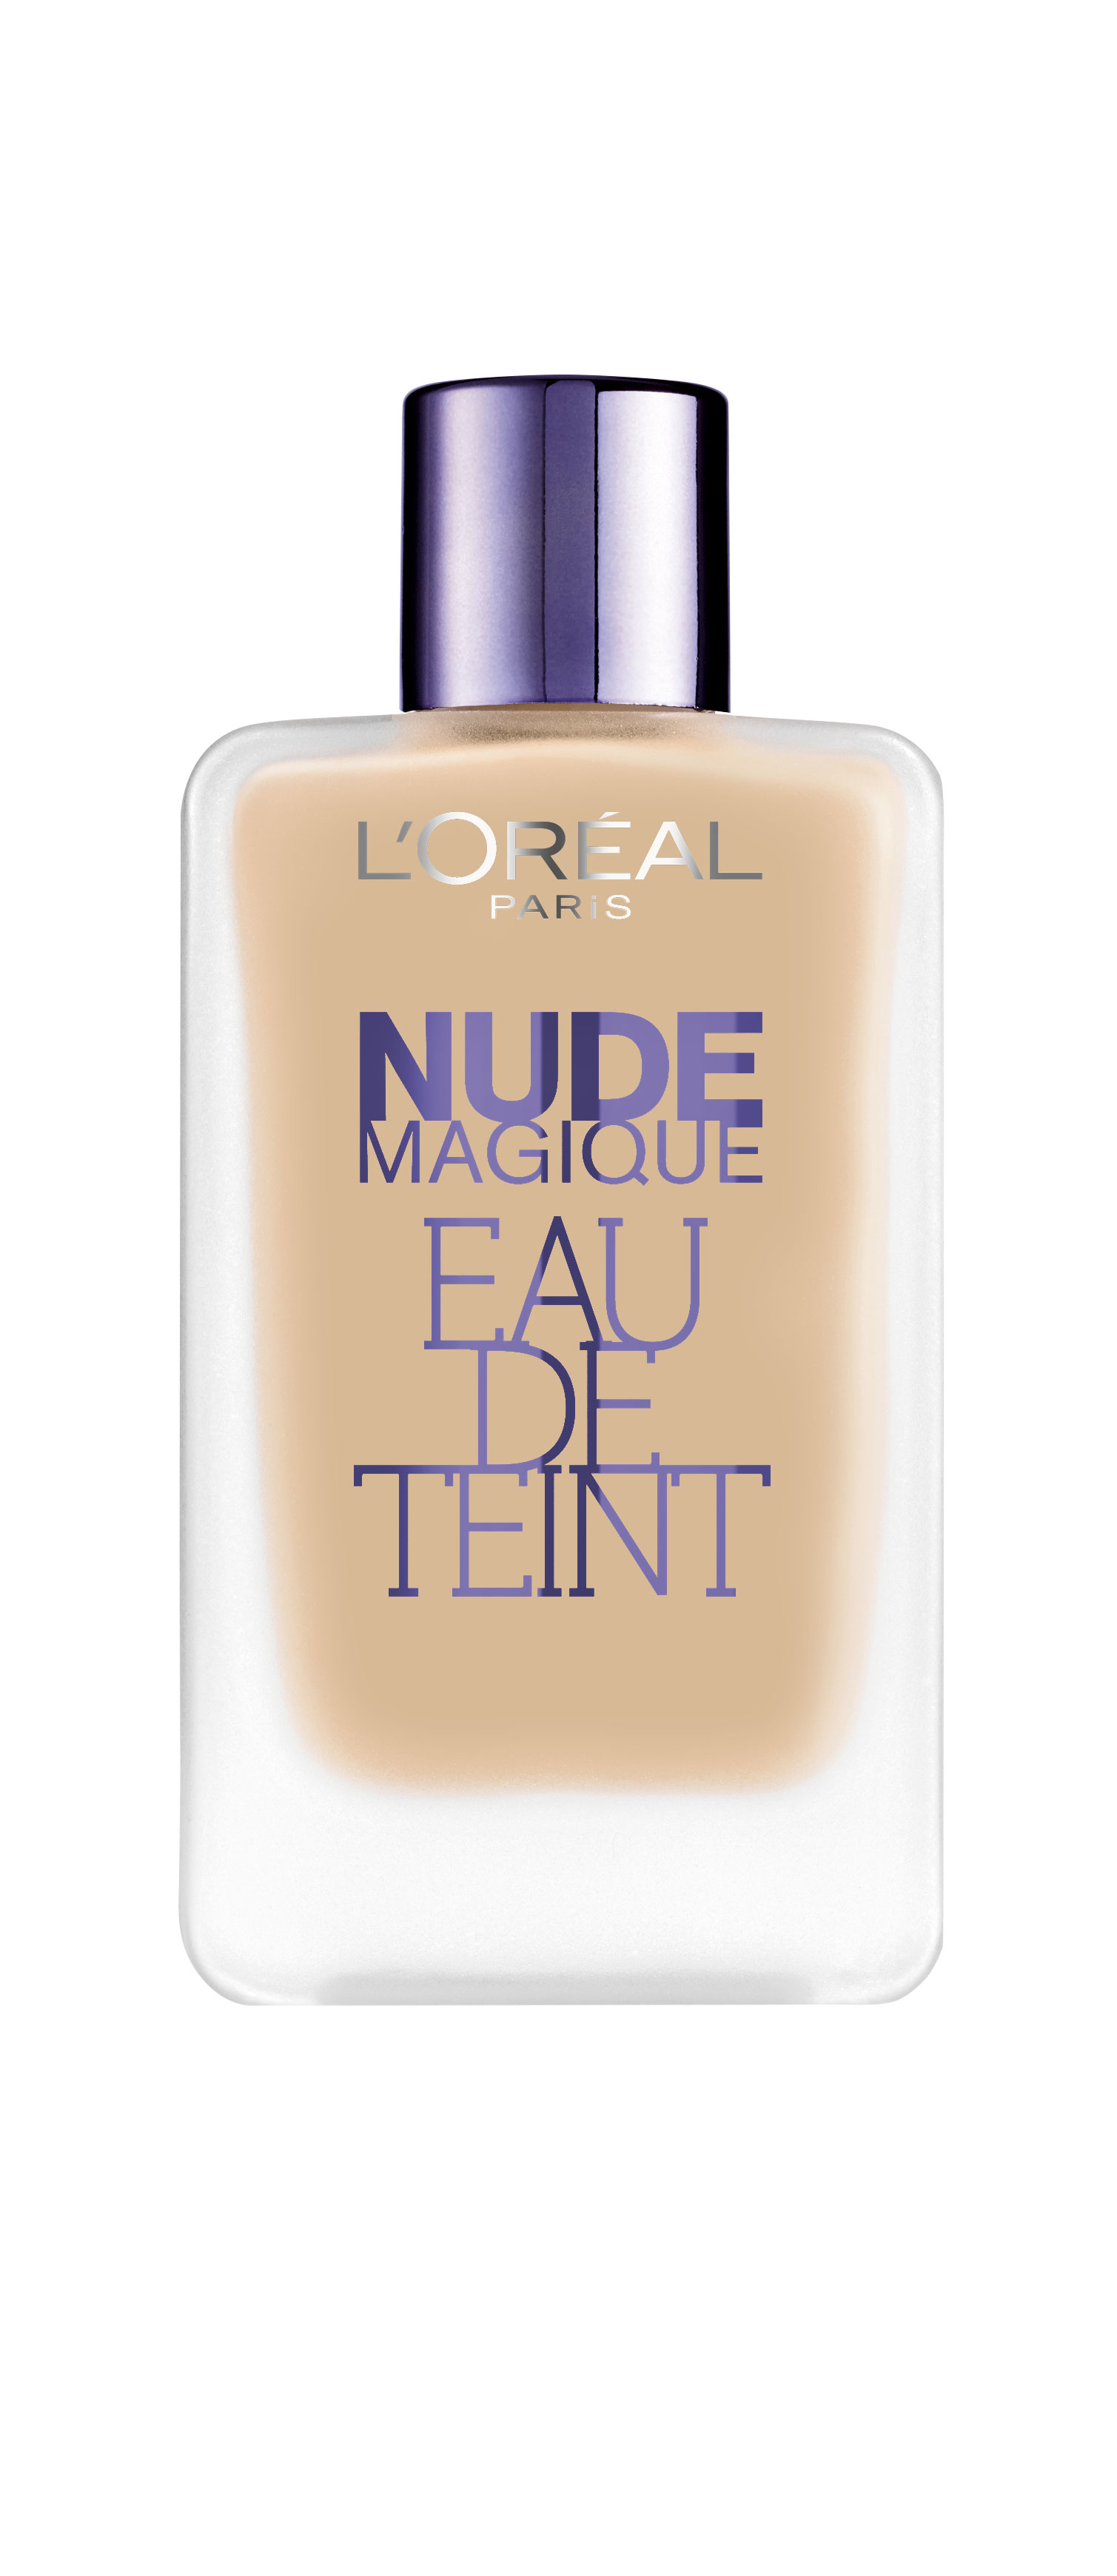 L'Oréal Nude Magique Eau de Teint - Ivoire Doré 110 - Foundation